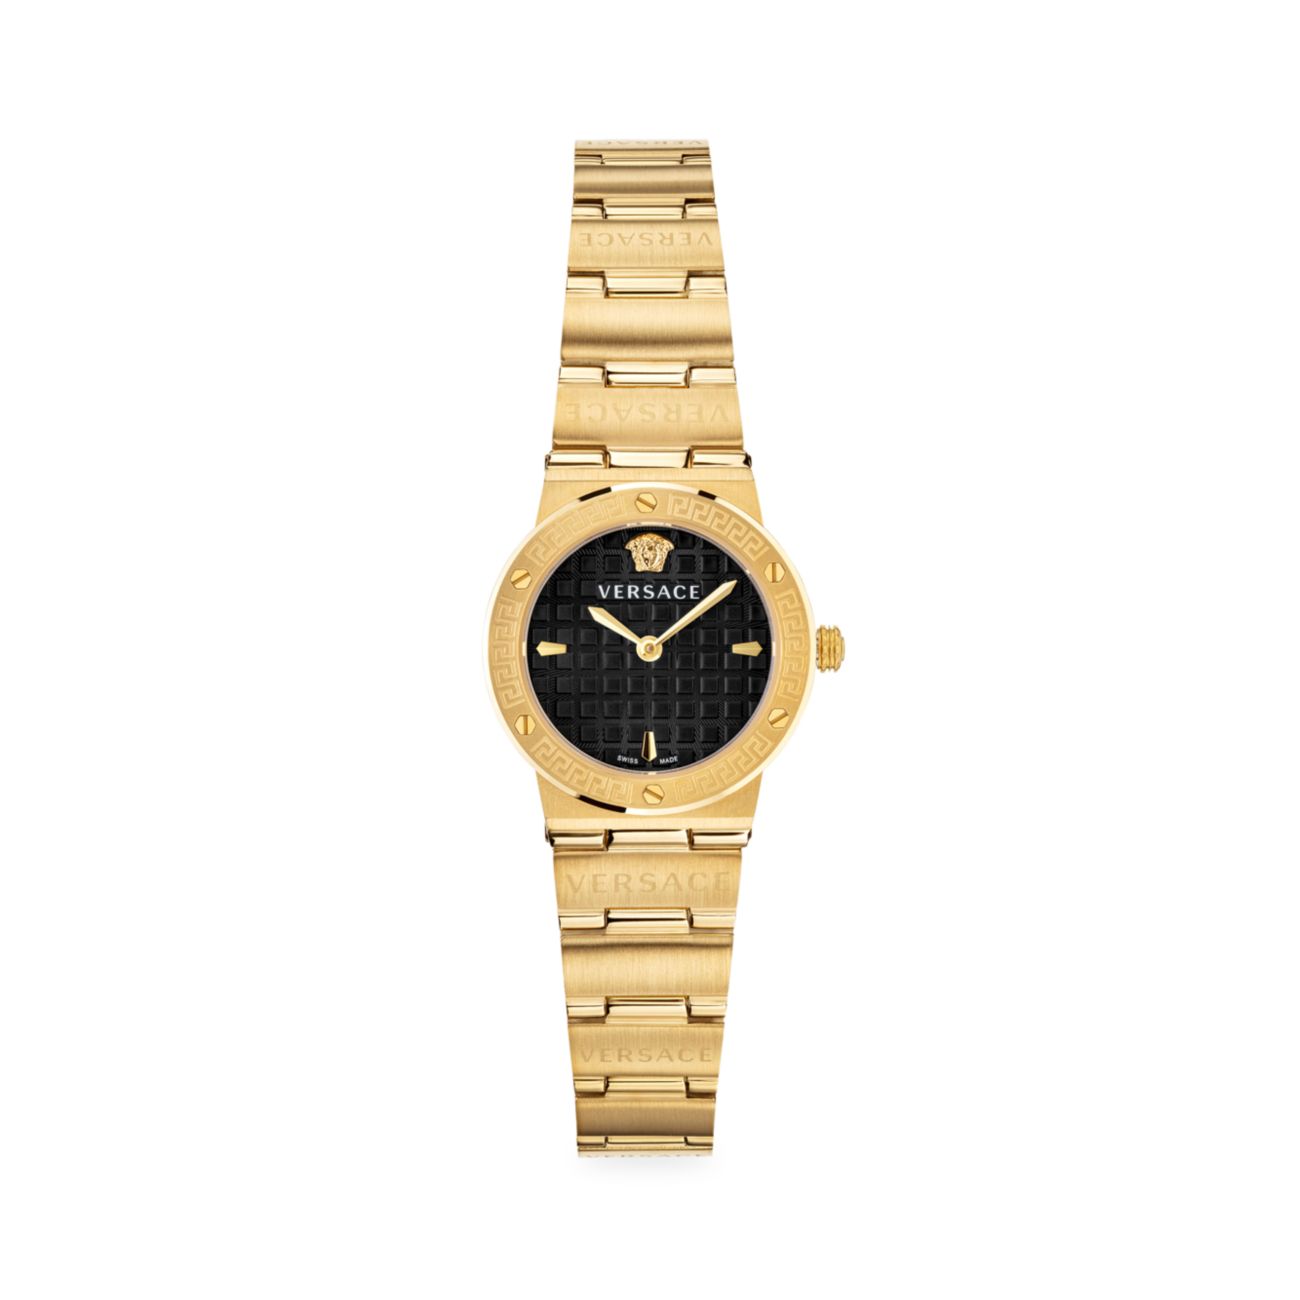 Миниатюрные часы с браслетом из желтого золота с логотипом Greca и IP Versace